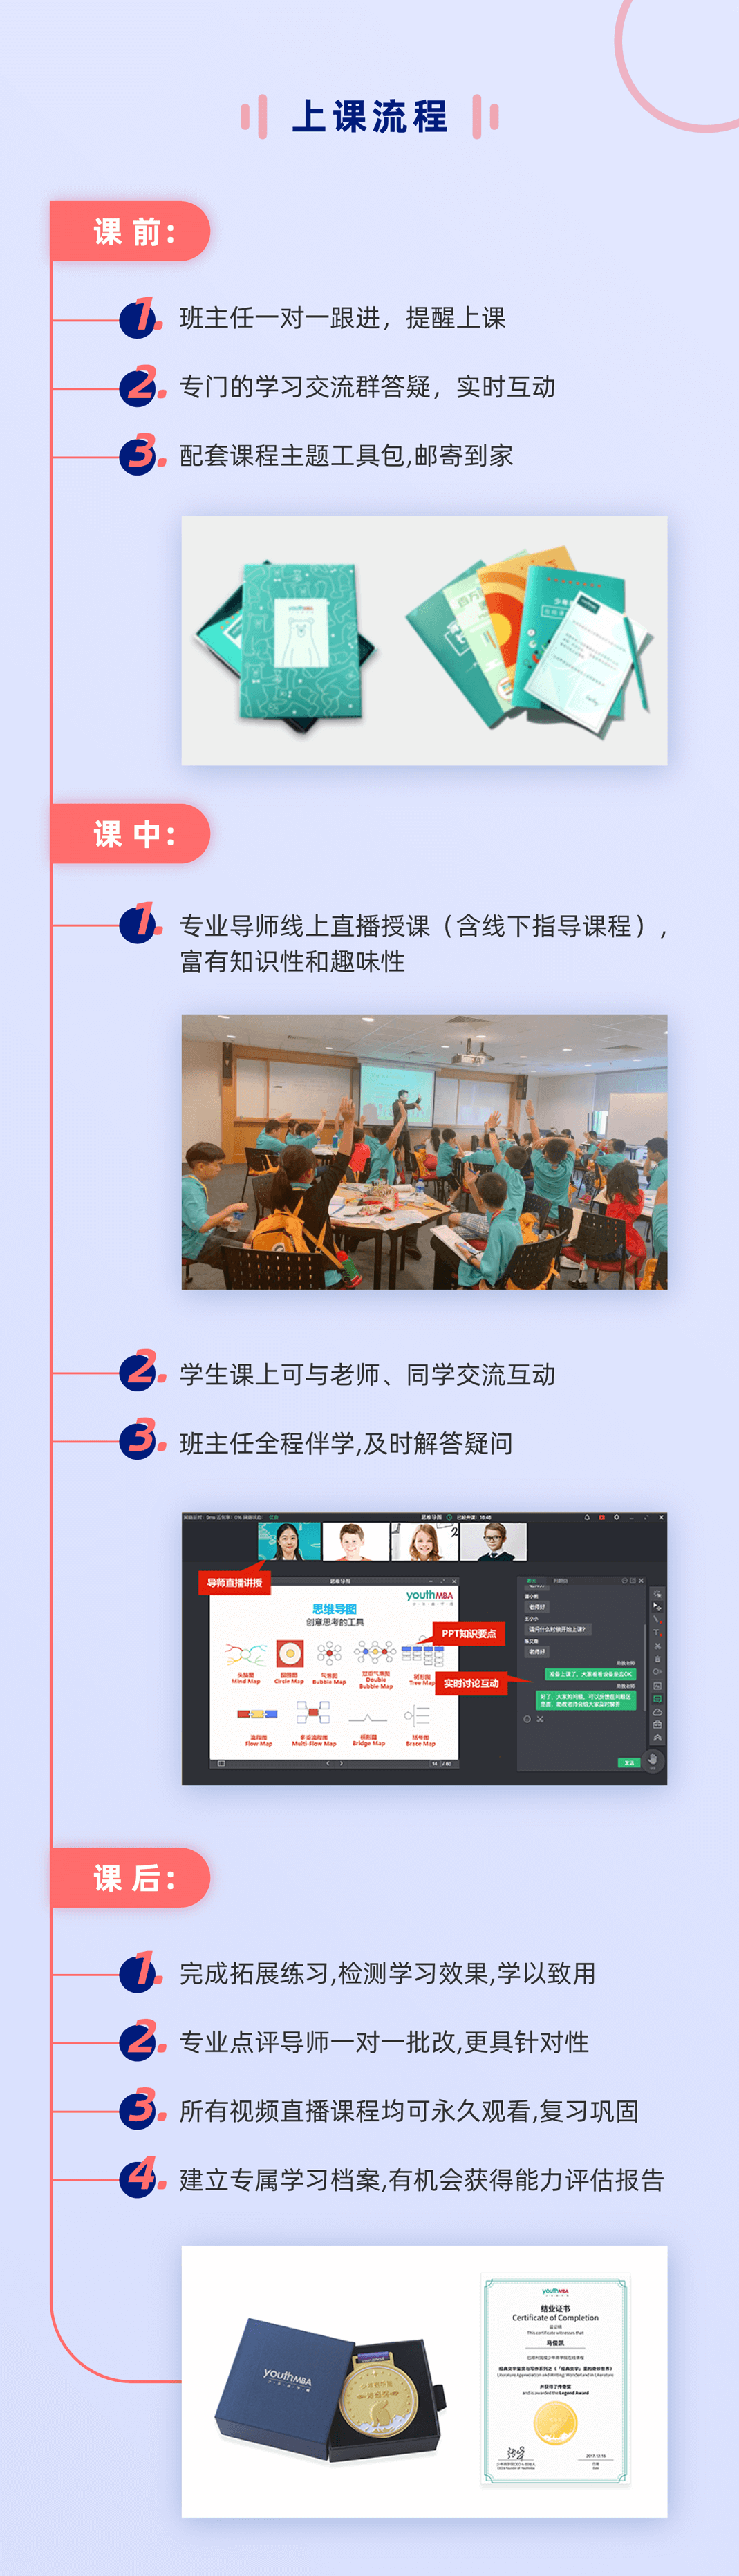 商业世界上海青浦平和双语学校专属课程-03_01.png